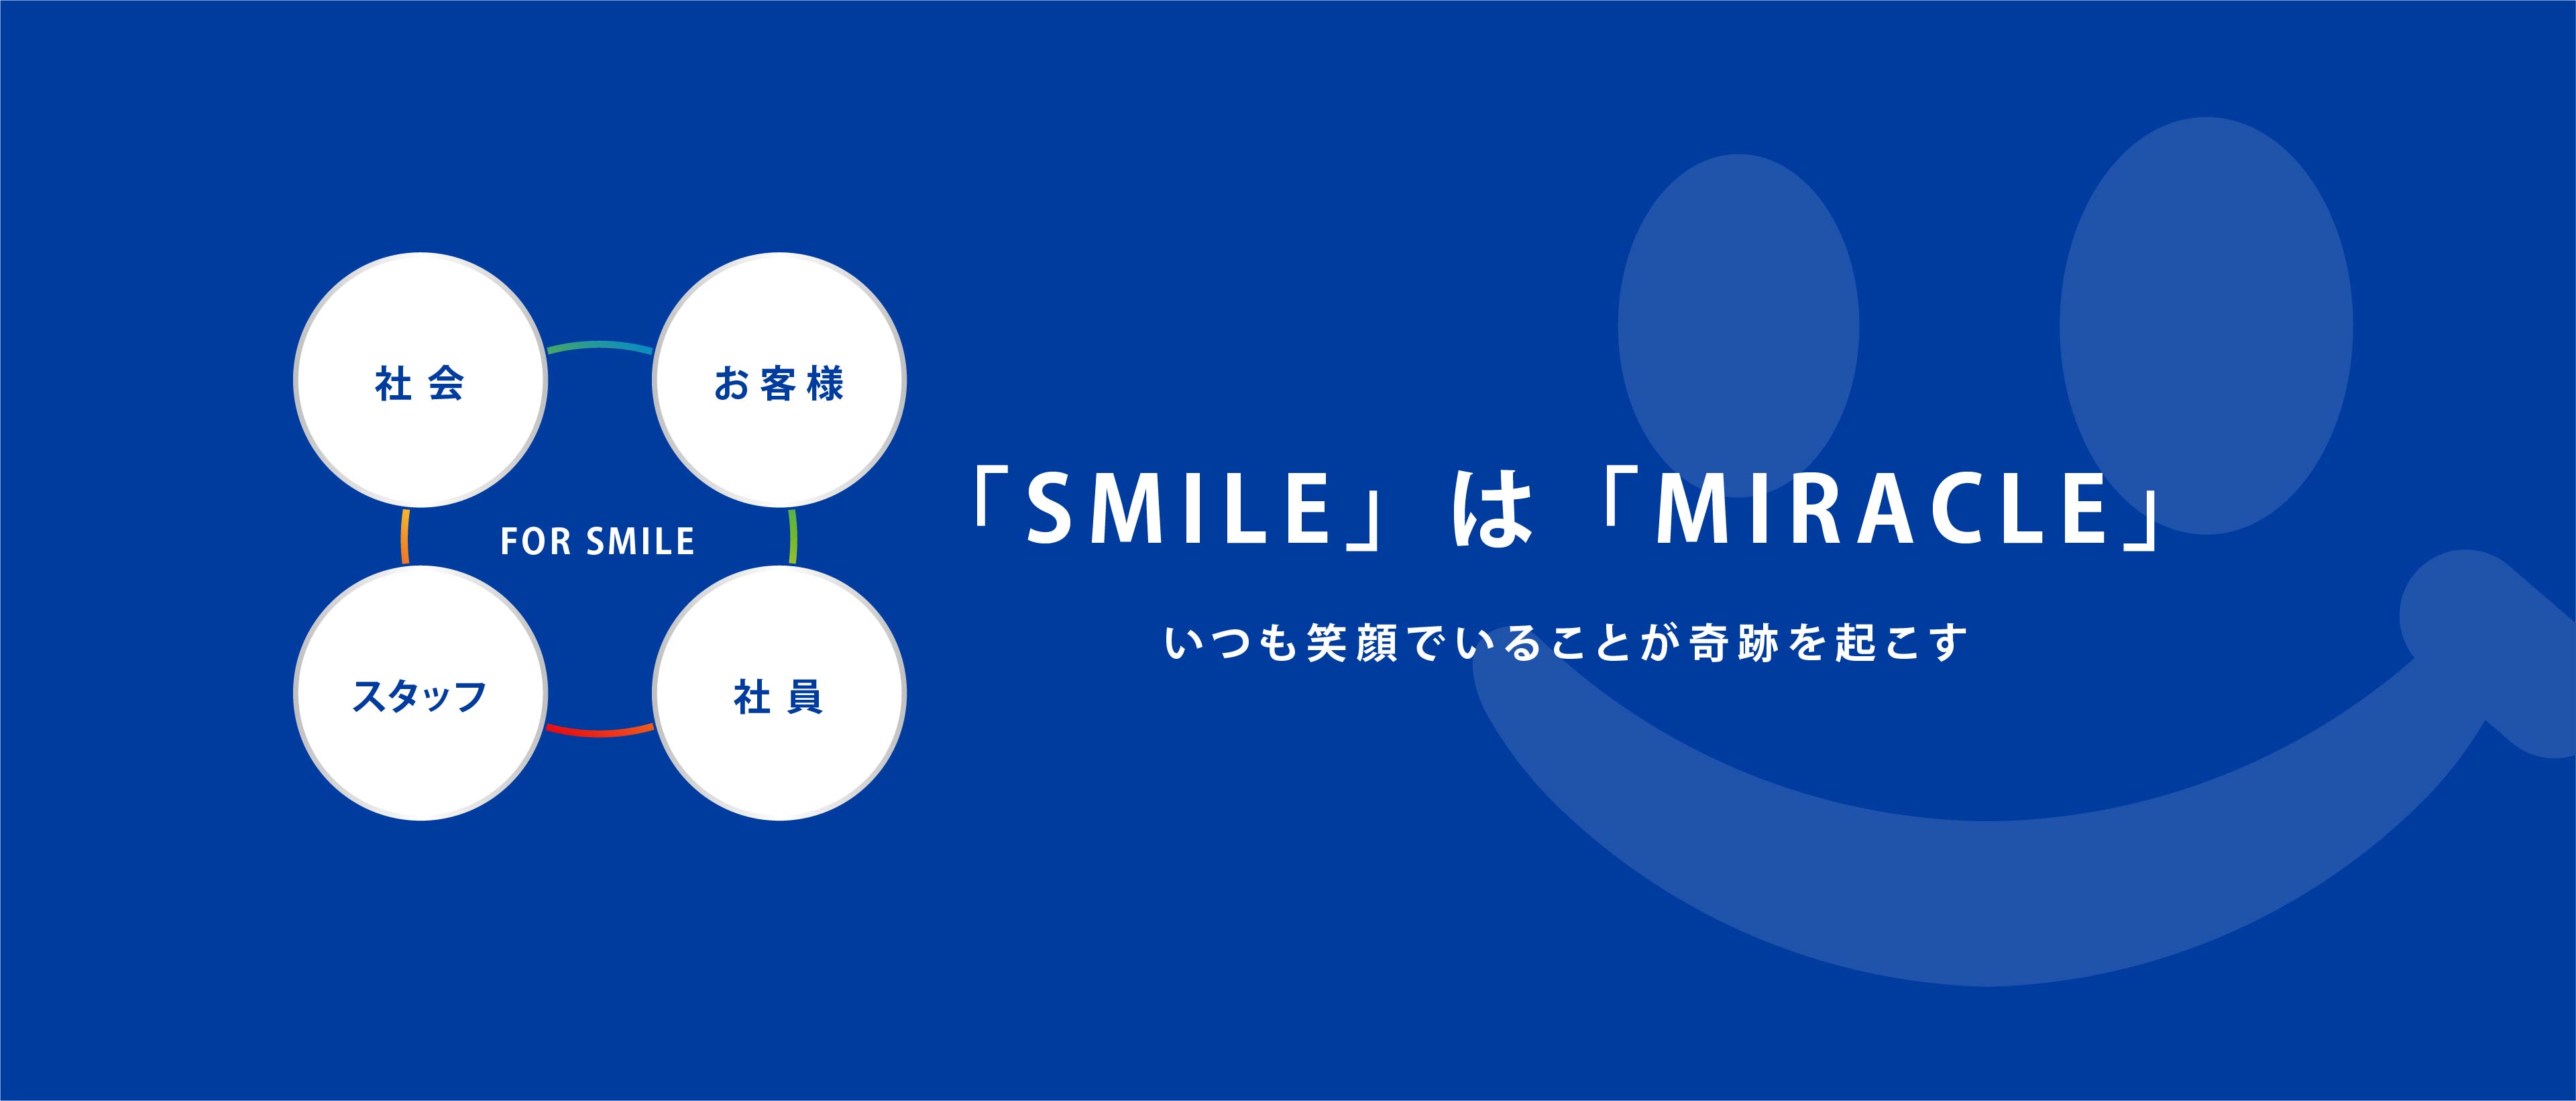 「SMILE」は「MIRACLE」いつも笑顔でいることが奇跡を起こす